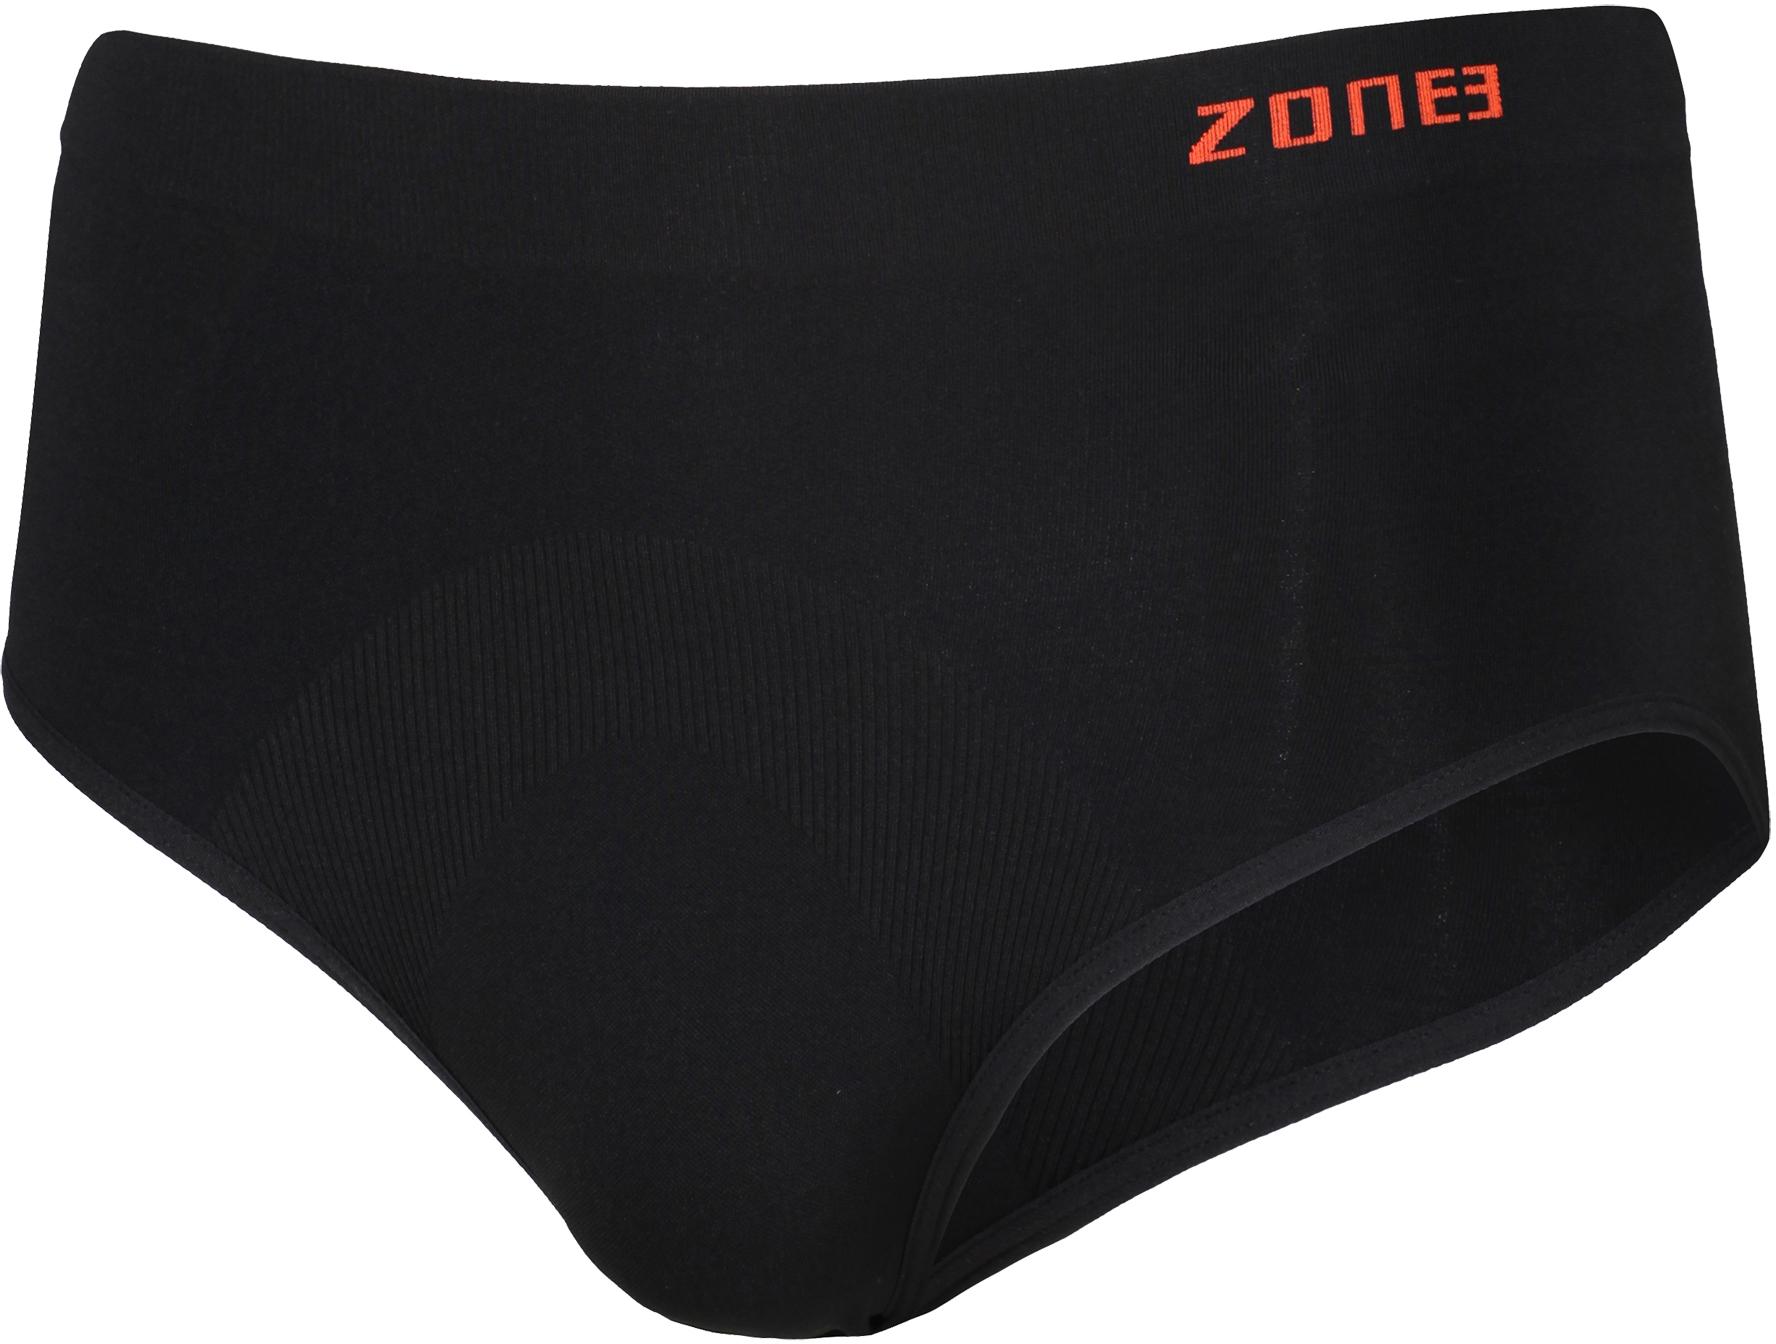 Zone3 Seamless Support Briefs - Black/orange